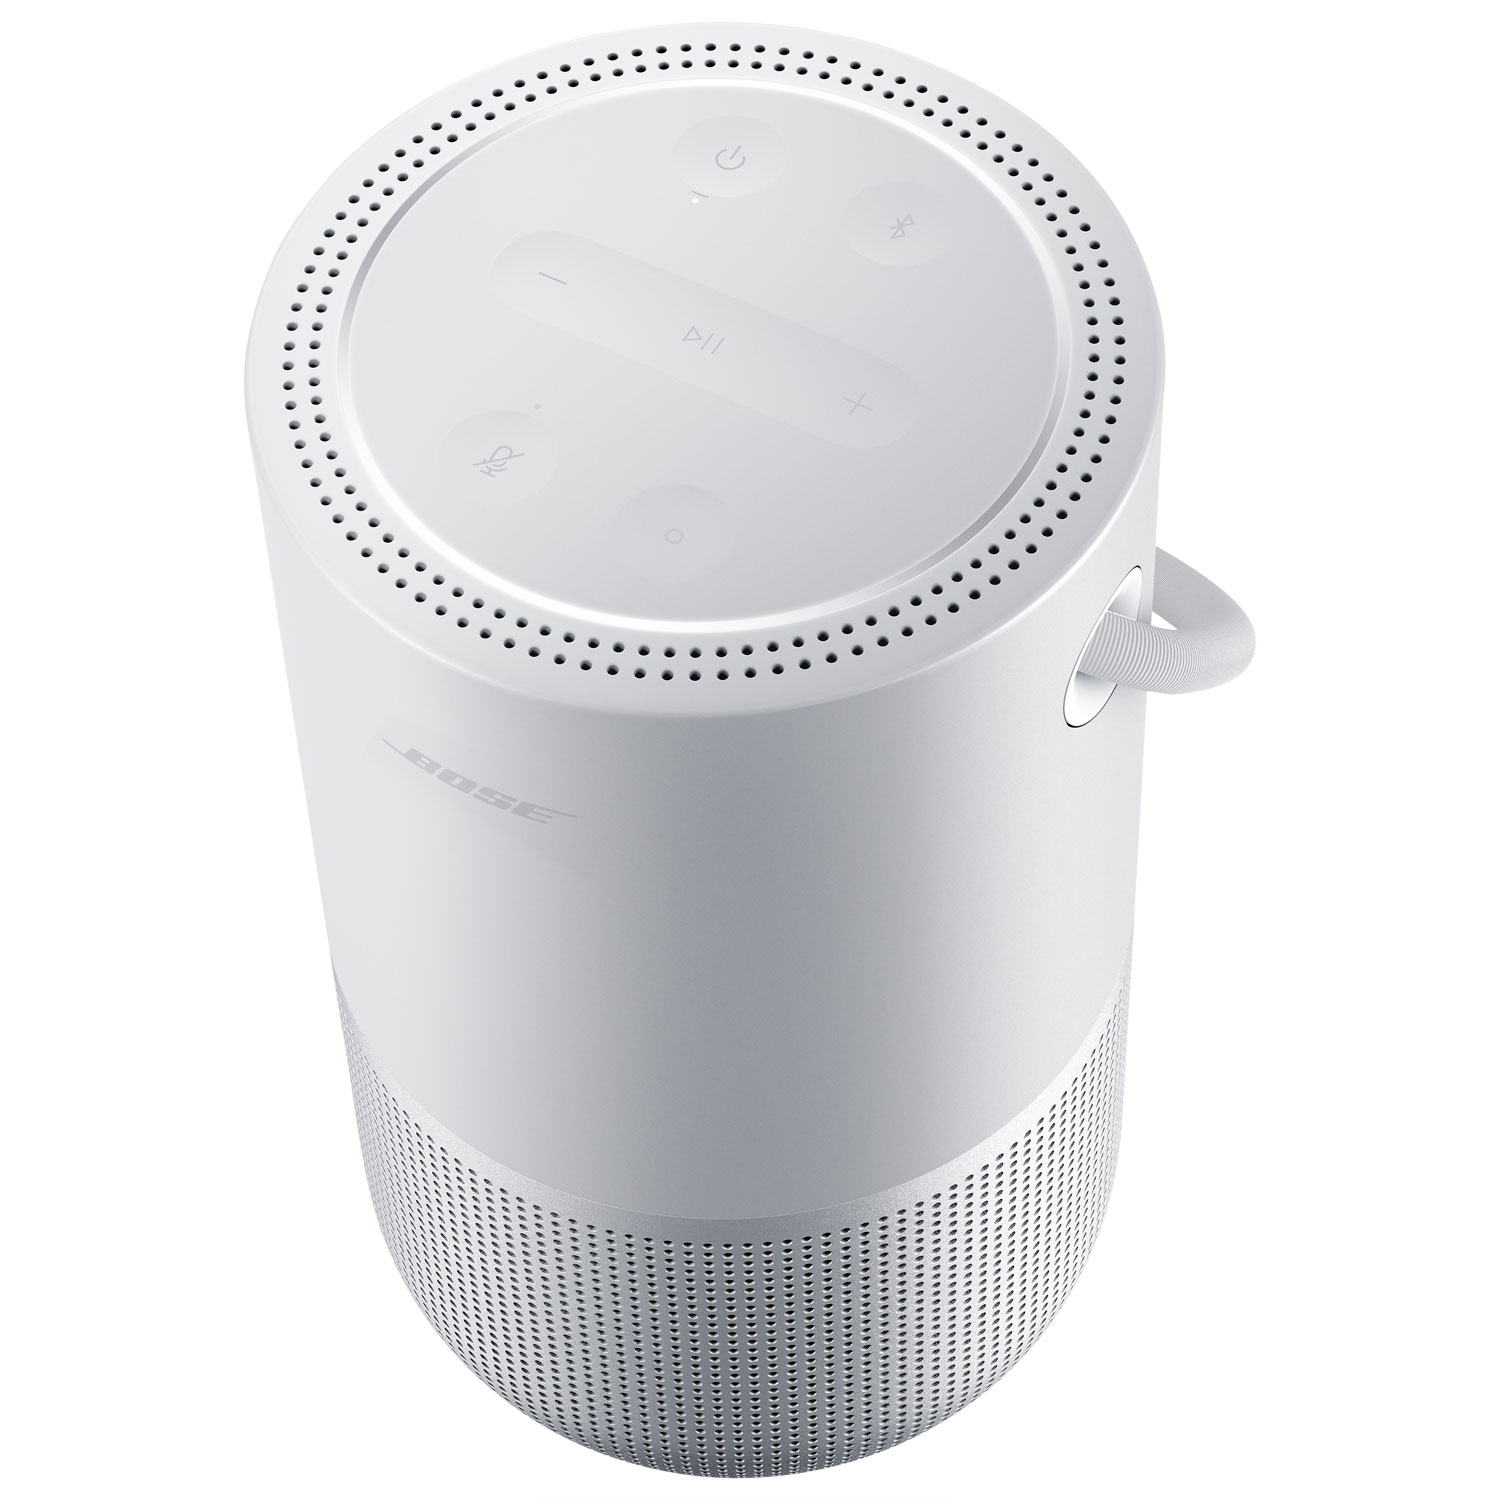 Bose Portable Smart Splashproof Bluetooth Wireless Speaker - Luxe